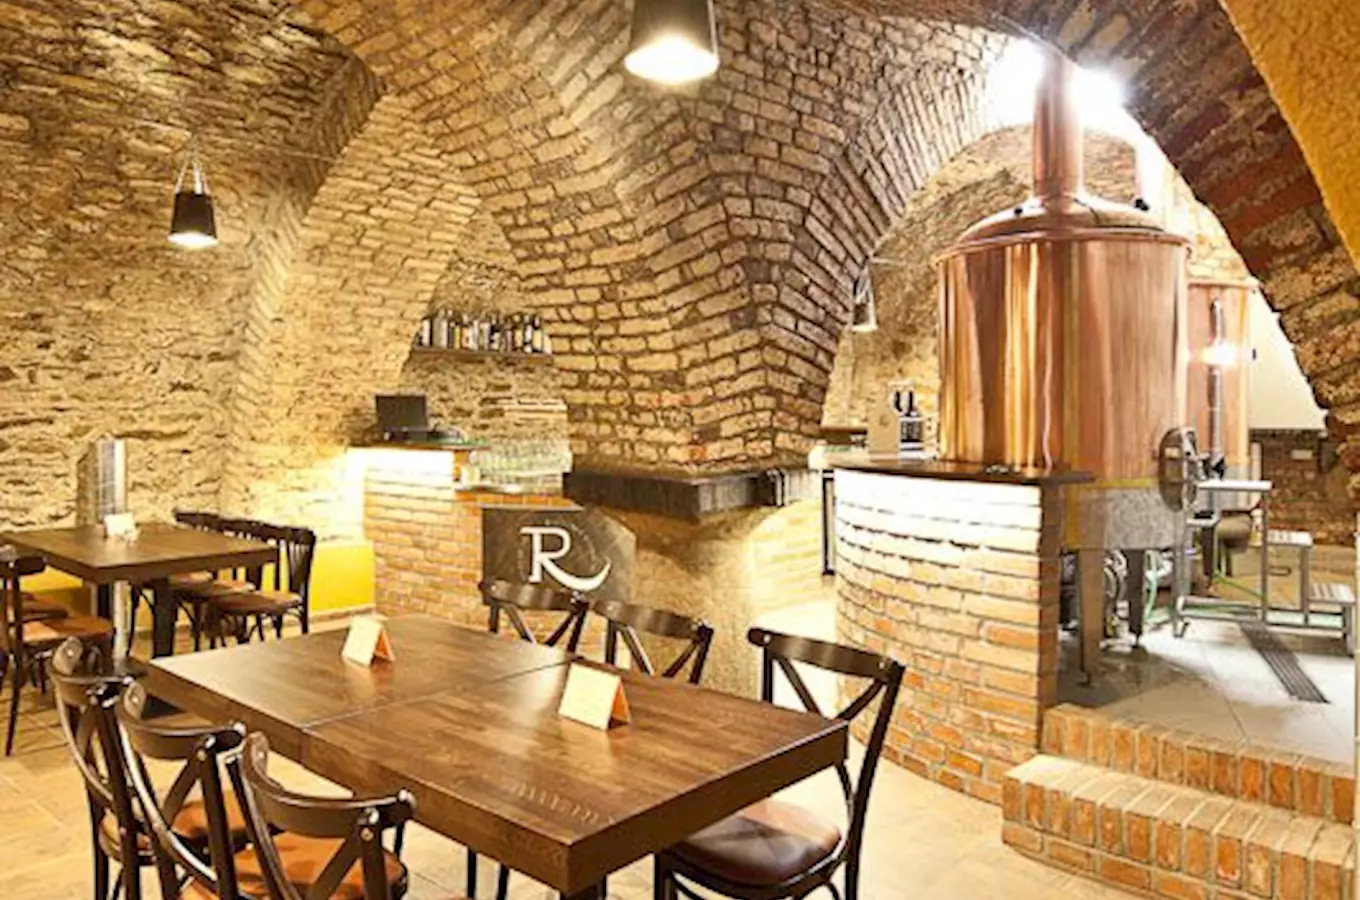 Jihlavský radniční právovárečný pivovar – uzavřeno